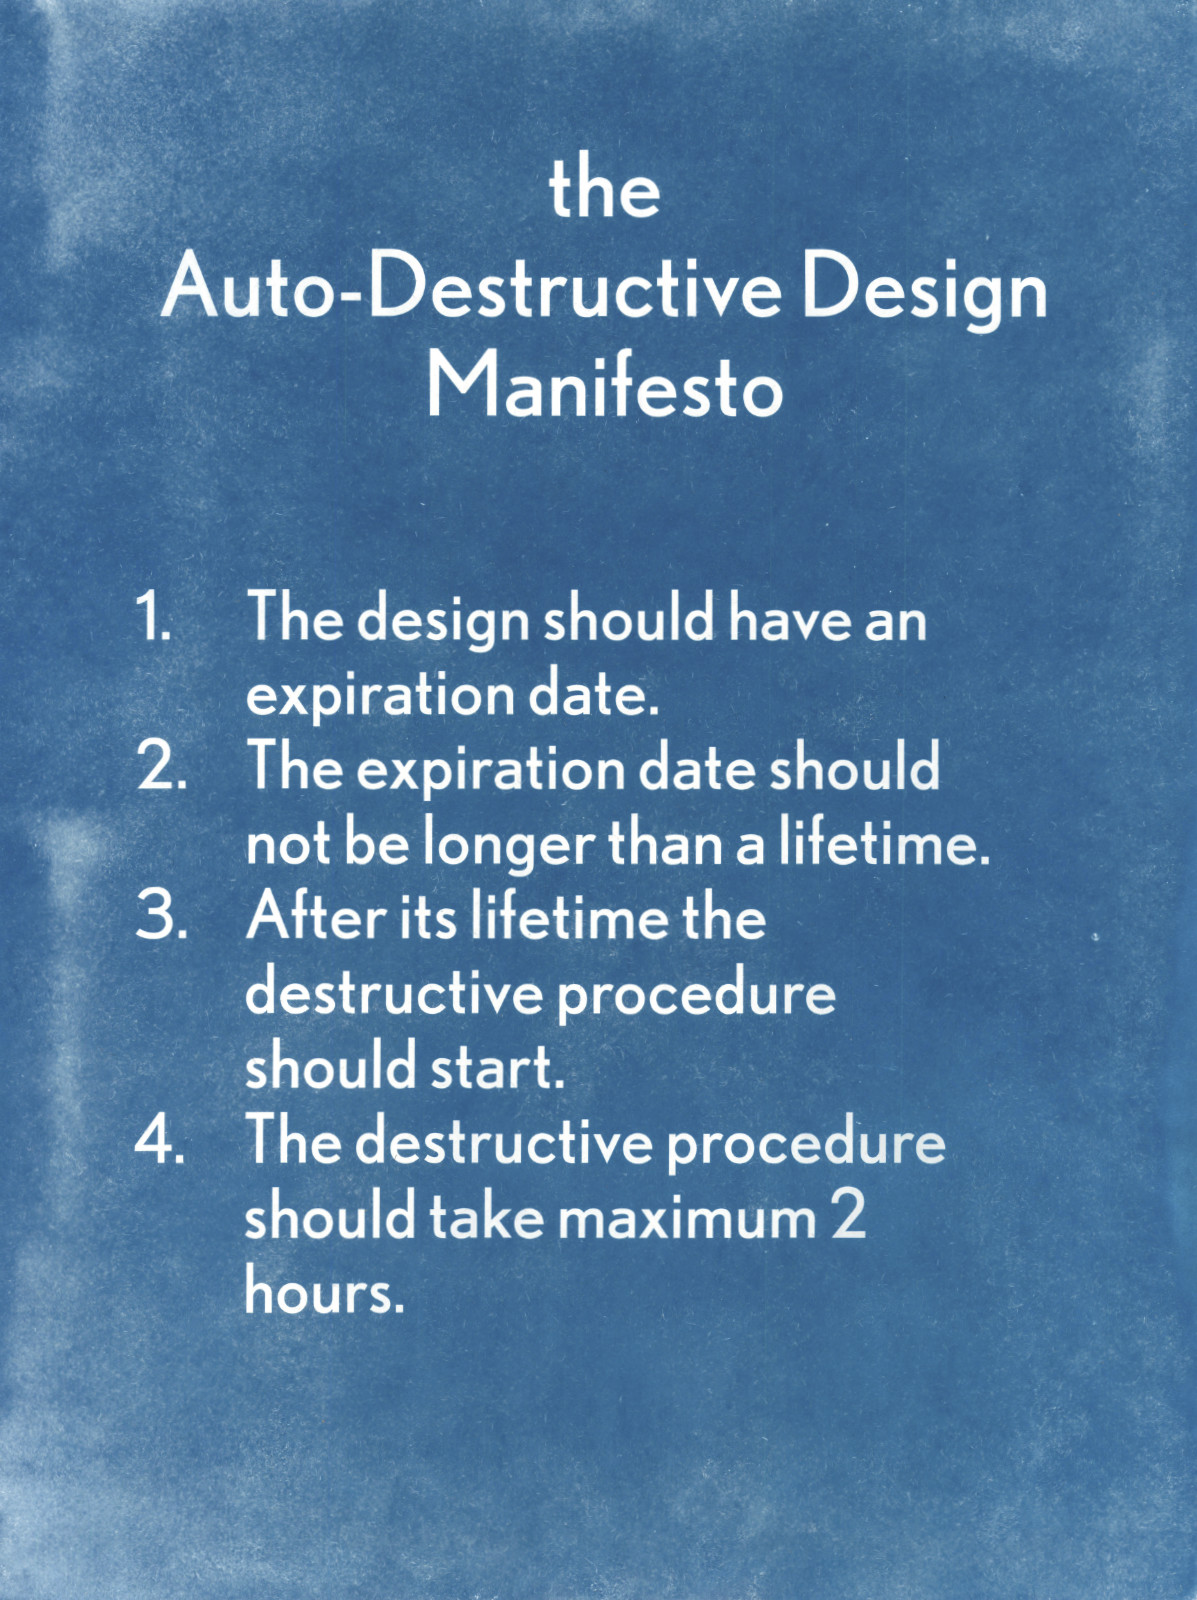 The Auto-Destructive Design Manifesto